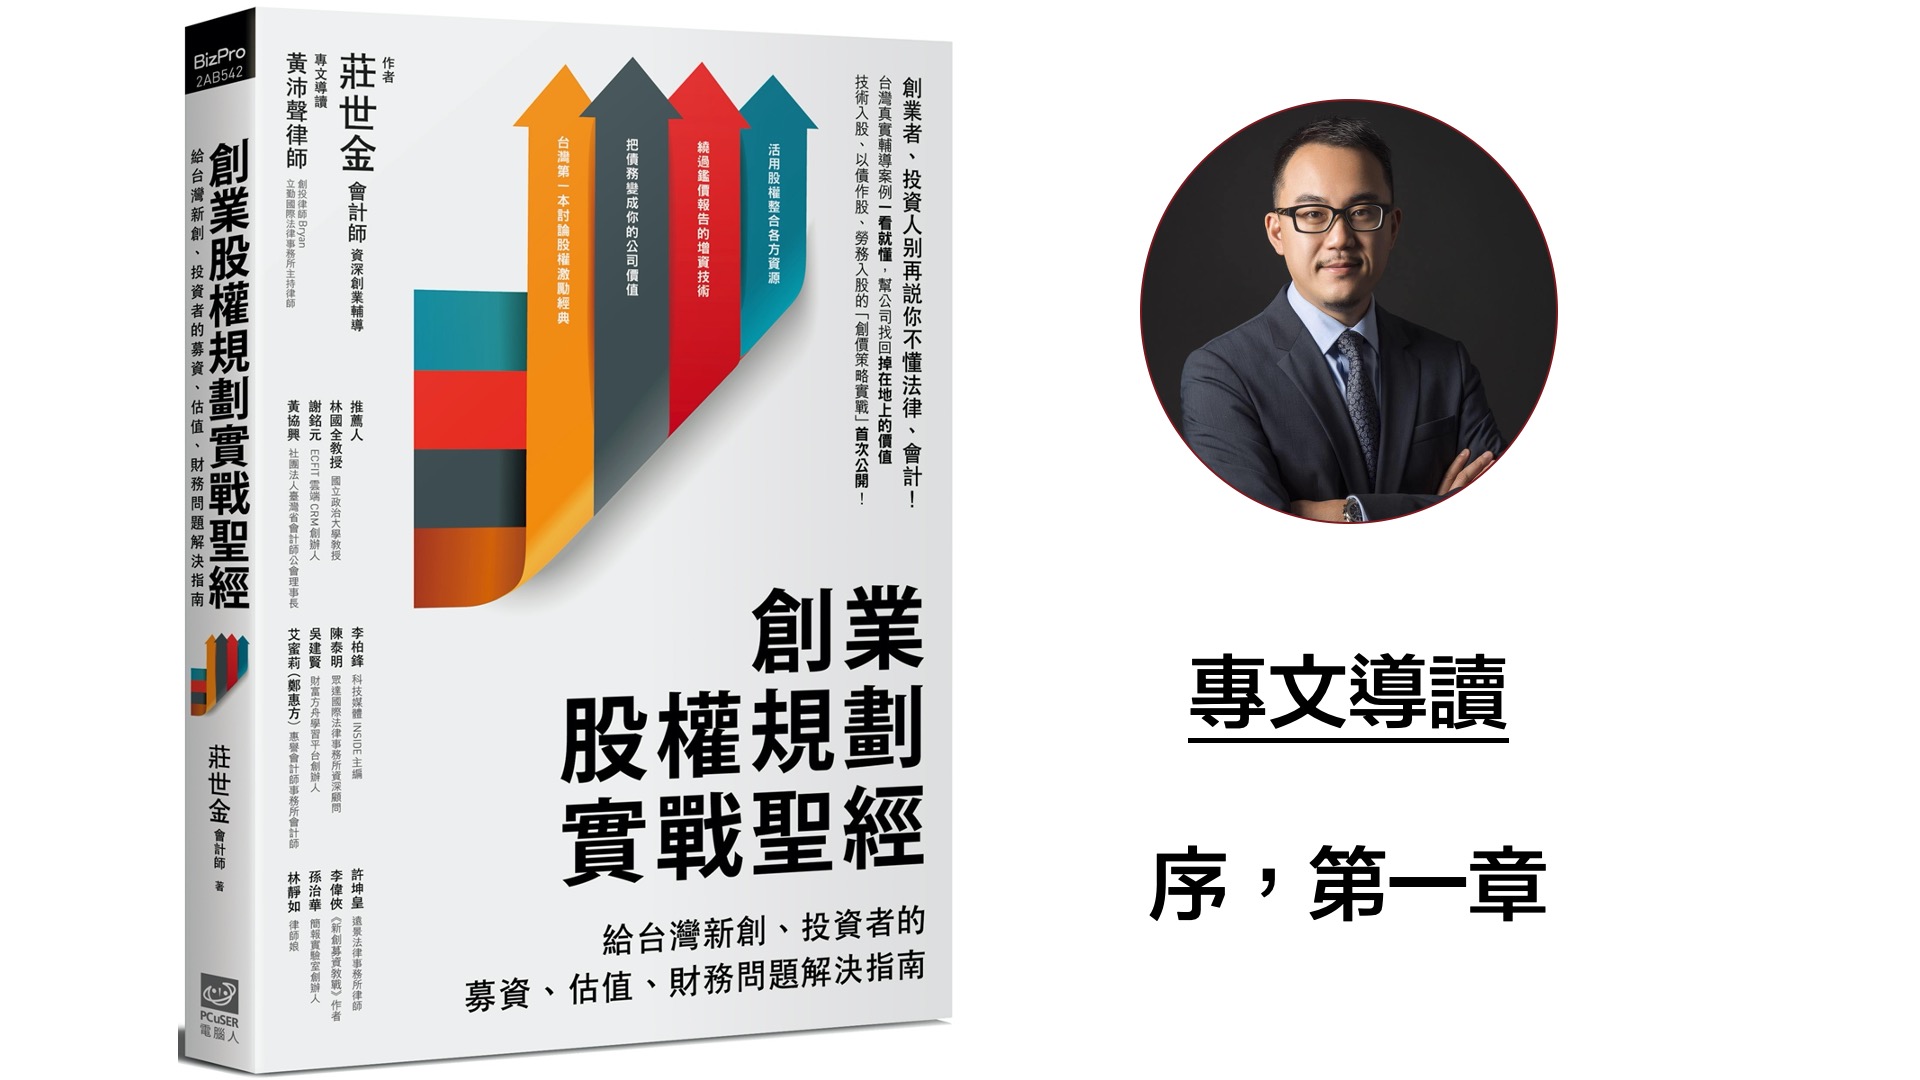 Bryan專文導讀《創業股權規劃實戰聖經：給台灣新創、投資者的募資、估值、財務問題解決指南》